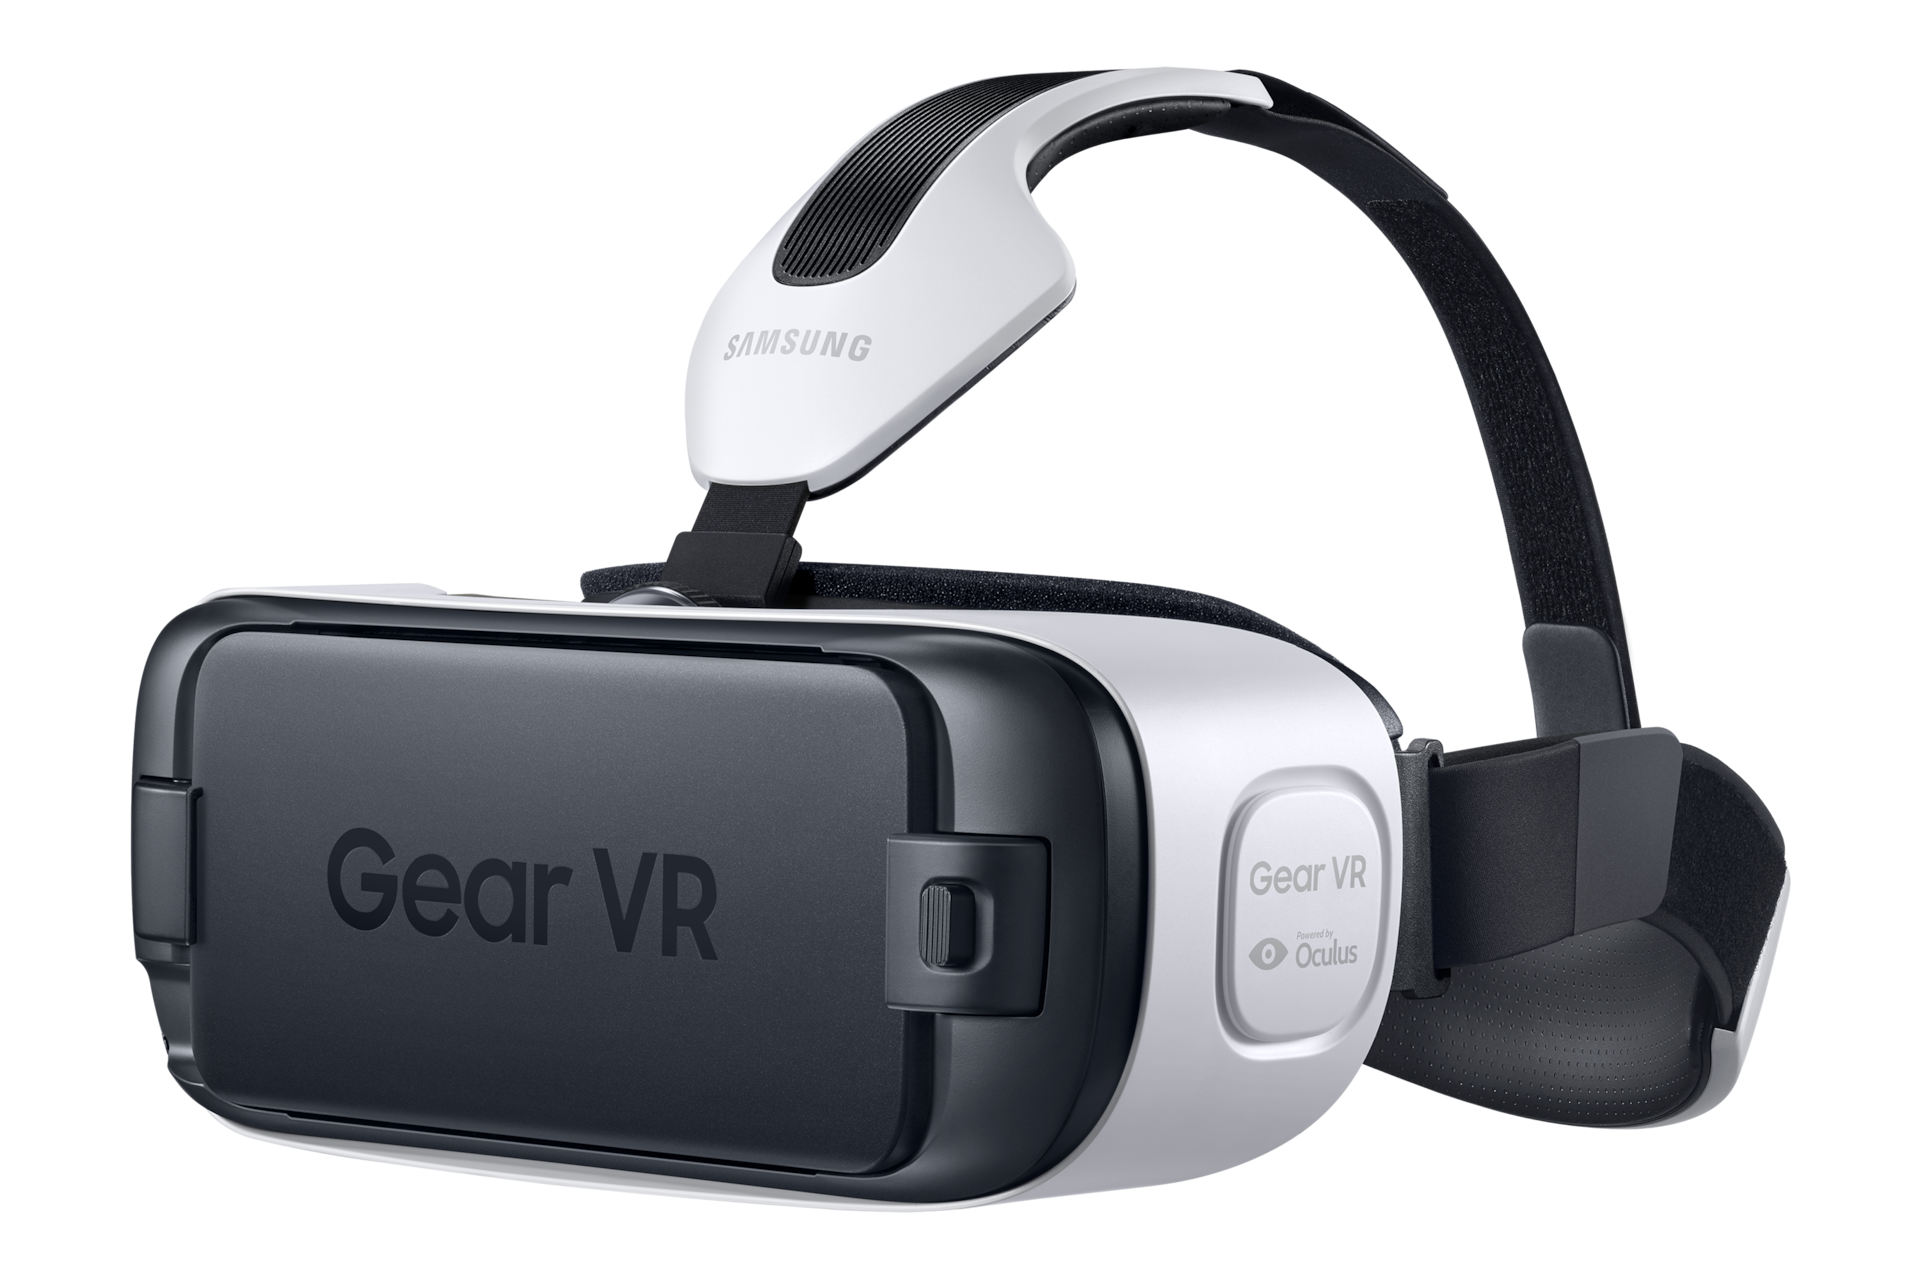 Gear VR Innovator Edition (Galaxy S6) | Samsung UK3000 x 2000